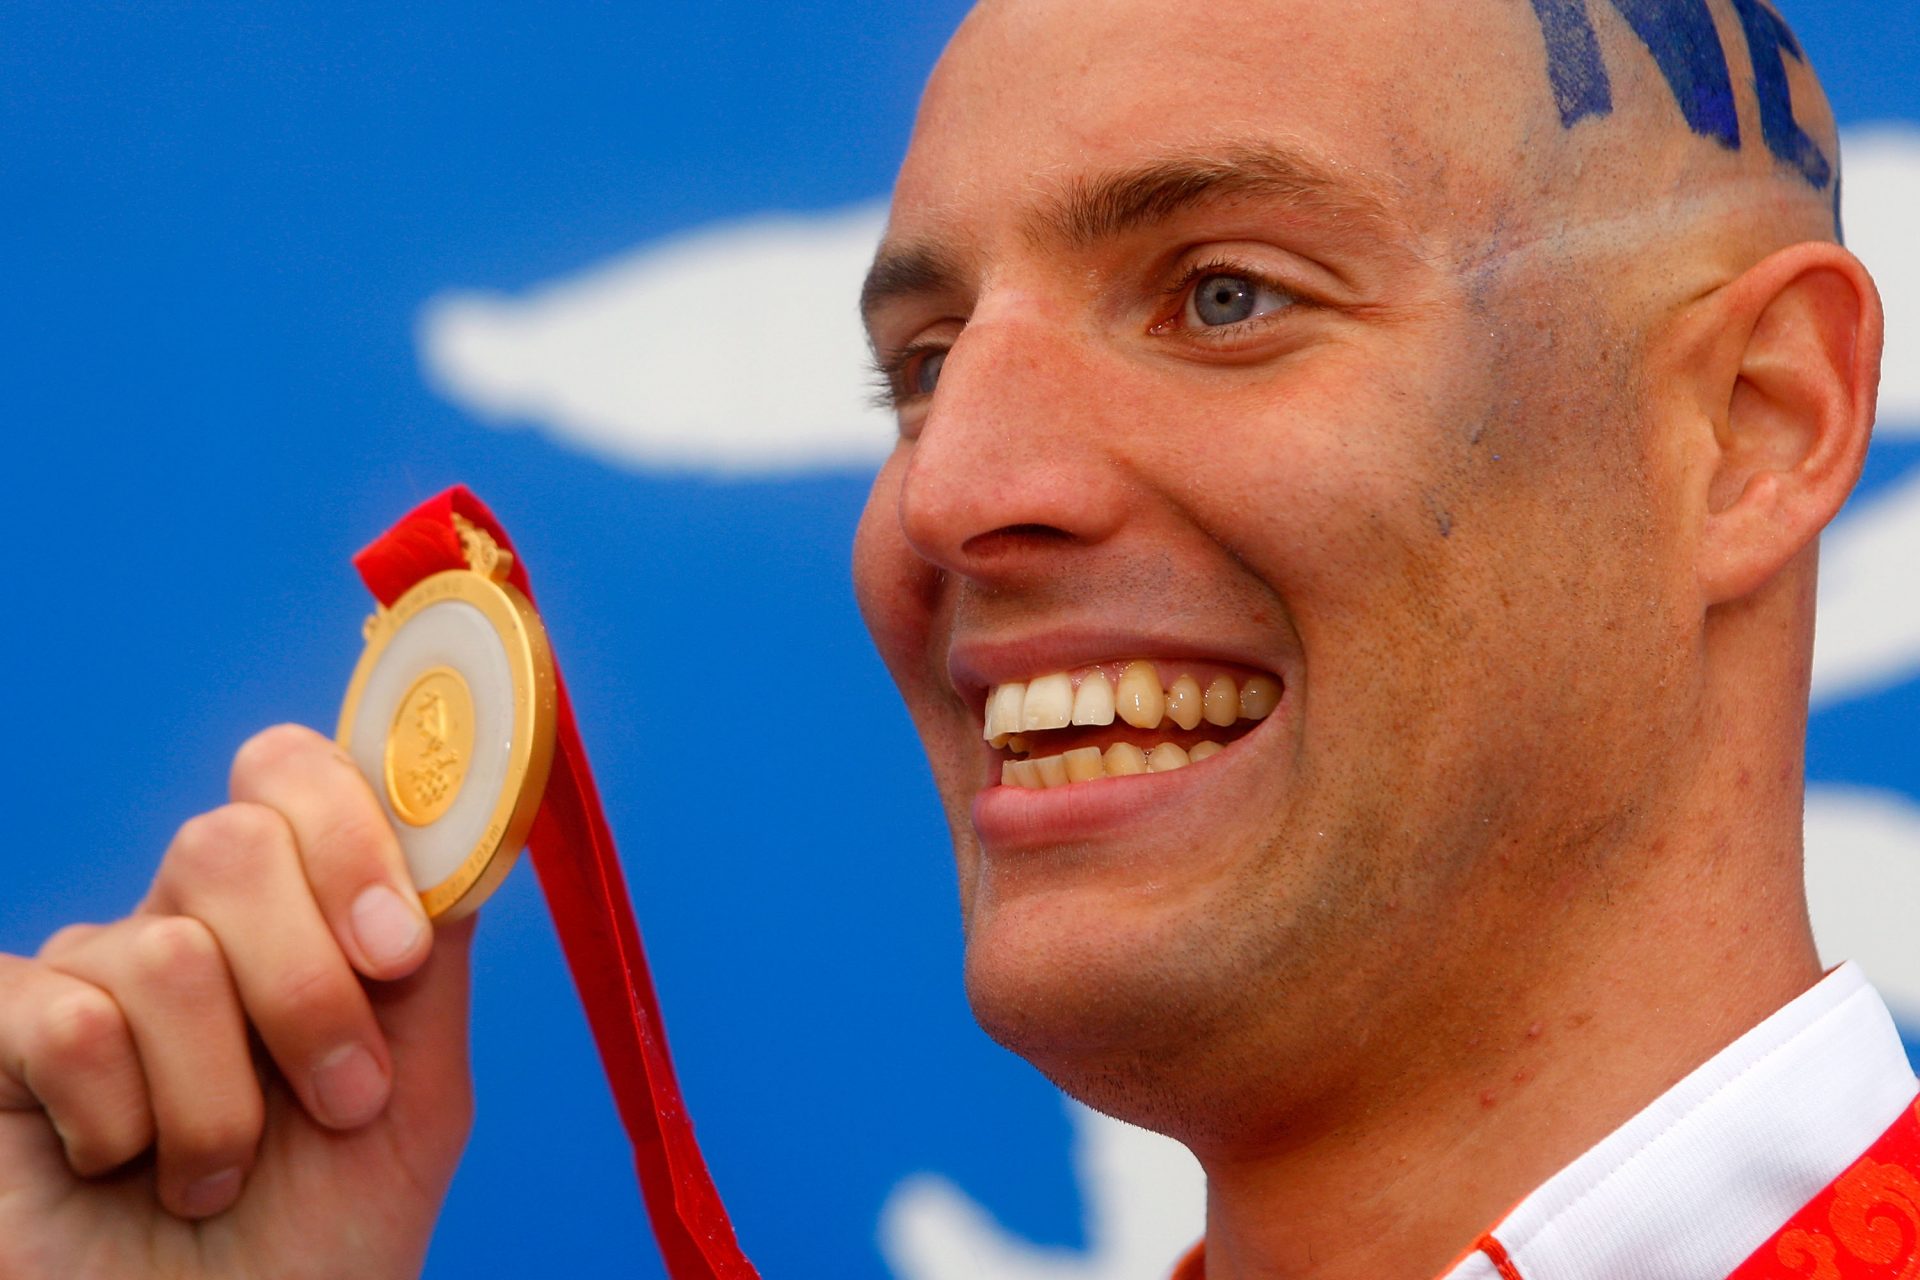 Maarten van der Weijden, van leukemiepatiënt tot olympisch kampioen